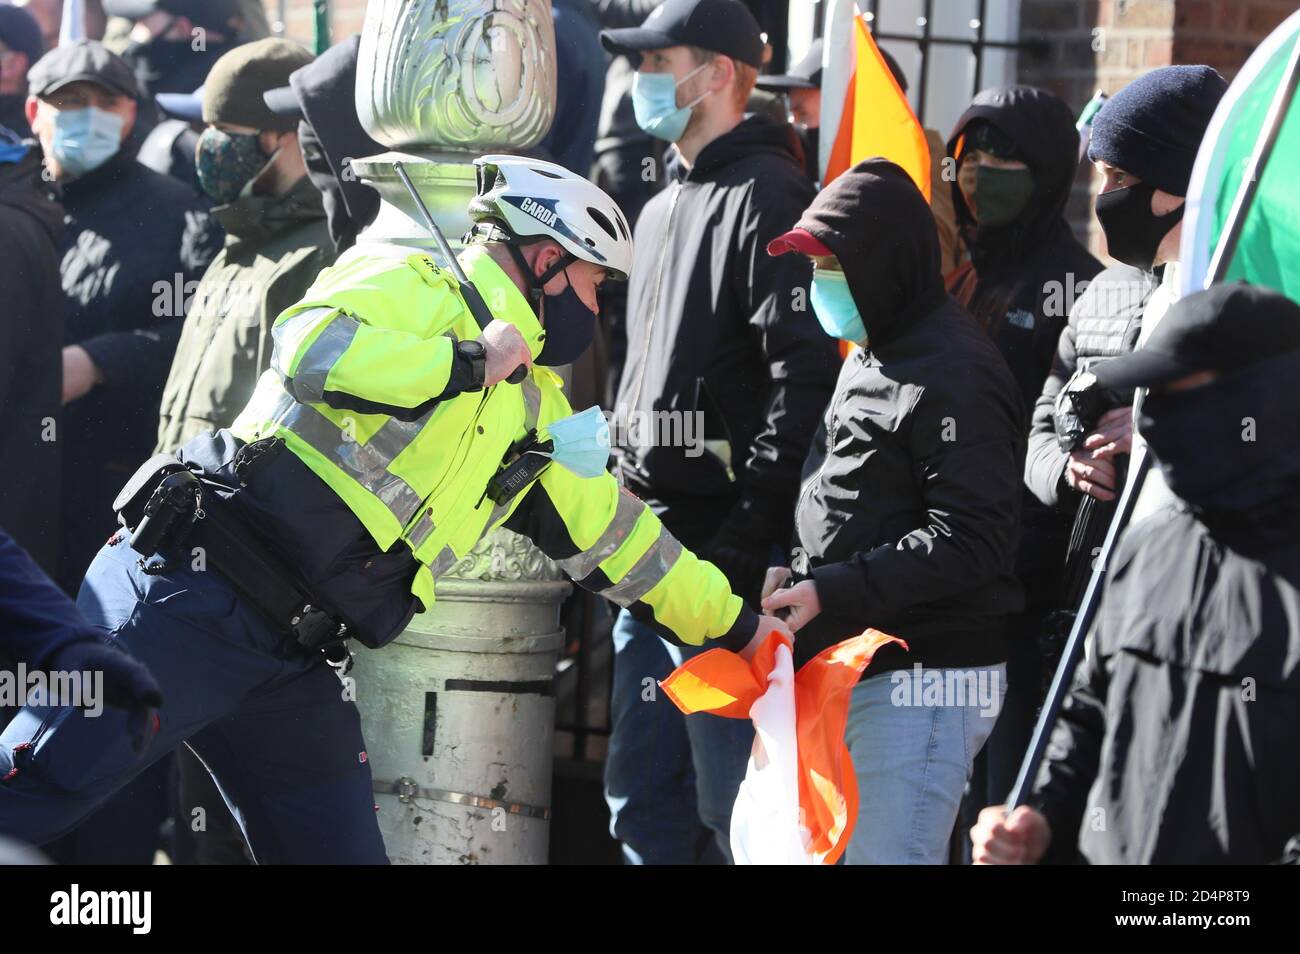 Les membres d'an Garda affrontent des manifestants lors d'une manifestation anti-verrouillage devant Leinster House, à Dublin, alors que l'Irlande continue d'être dans une écluse nationale de niveau 3 du coronavirus. Banque D'Images